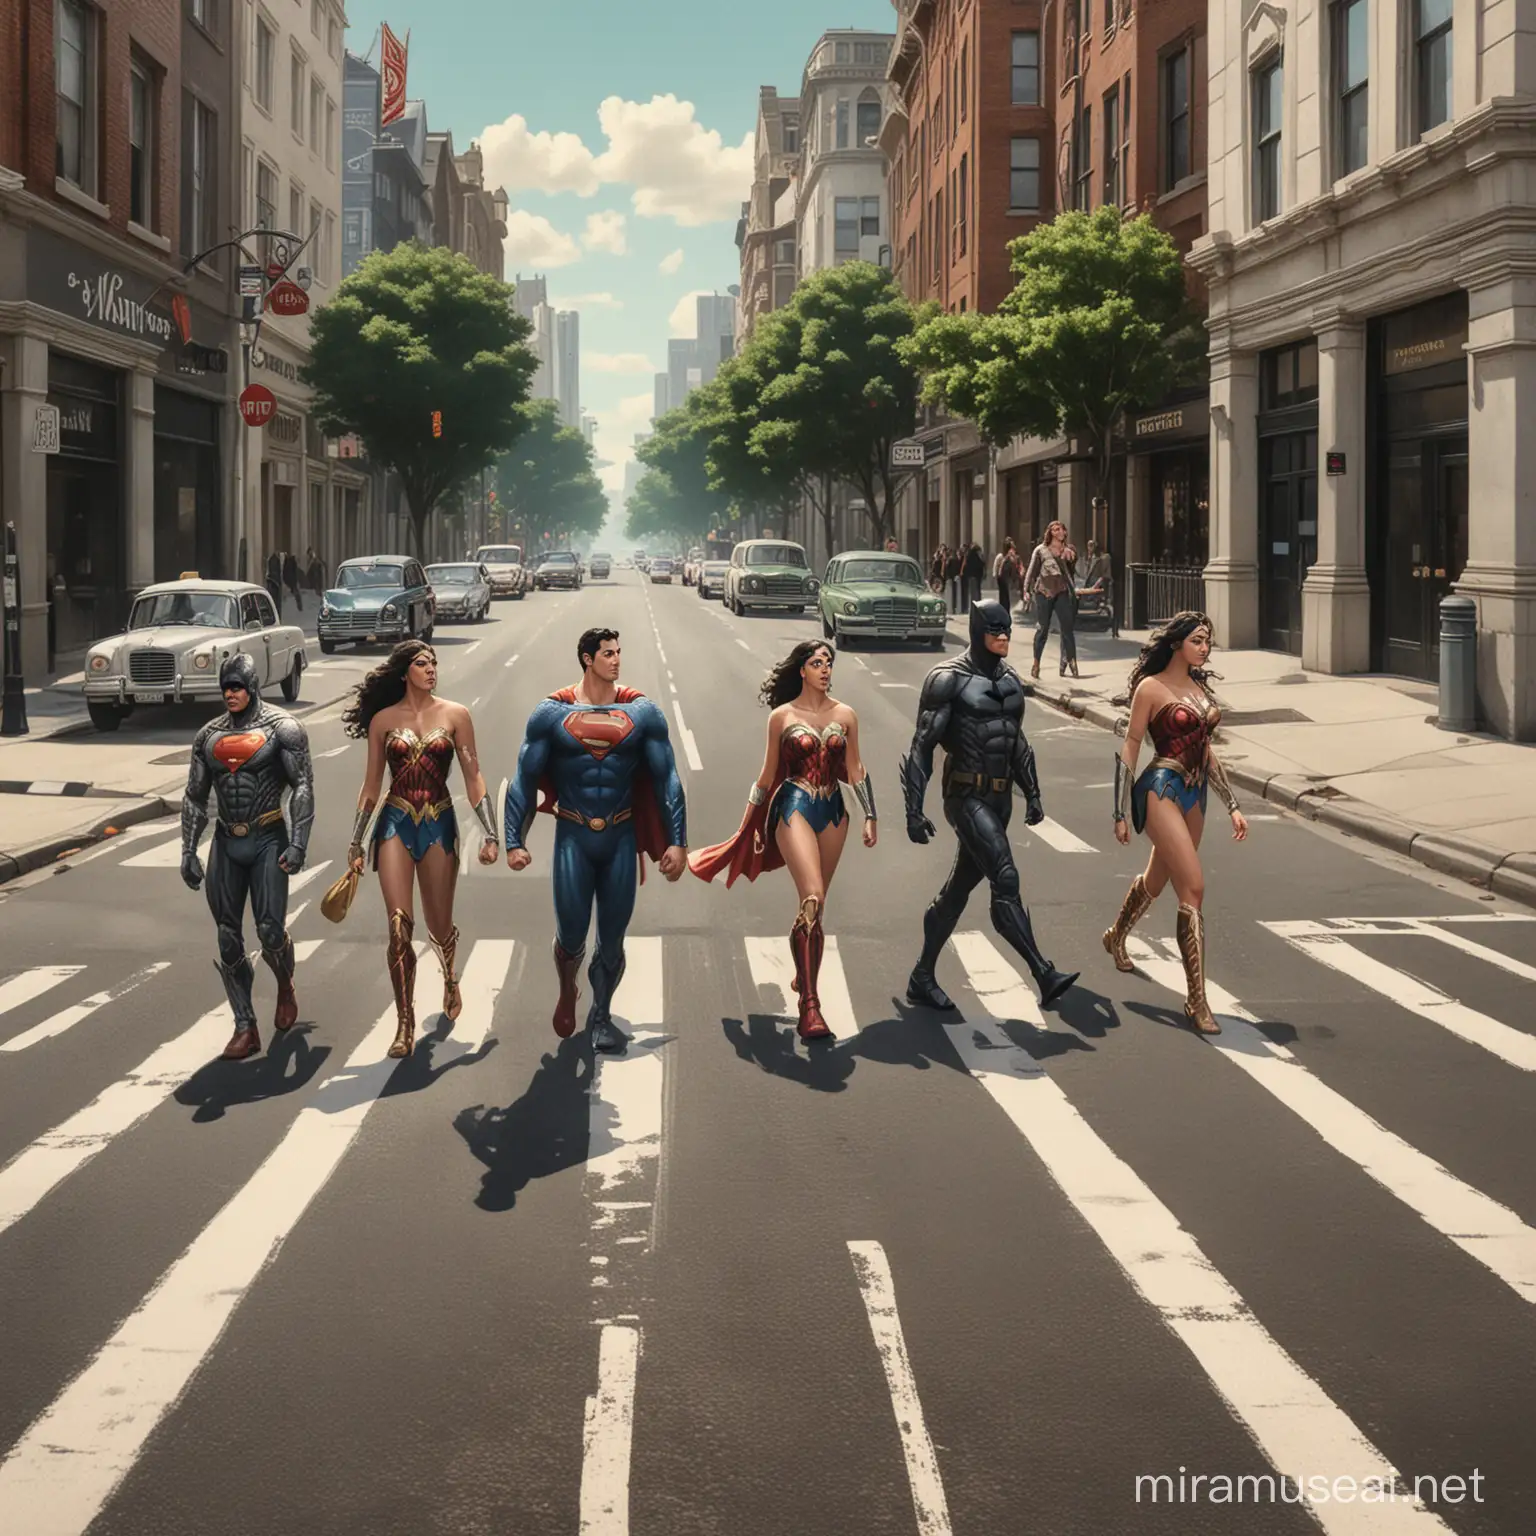 Superheroes Walking Single File in Abbey Road Style